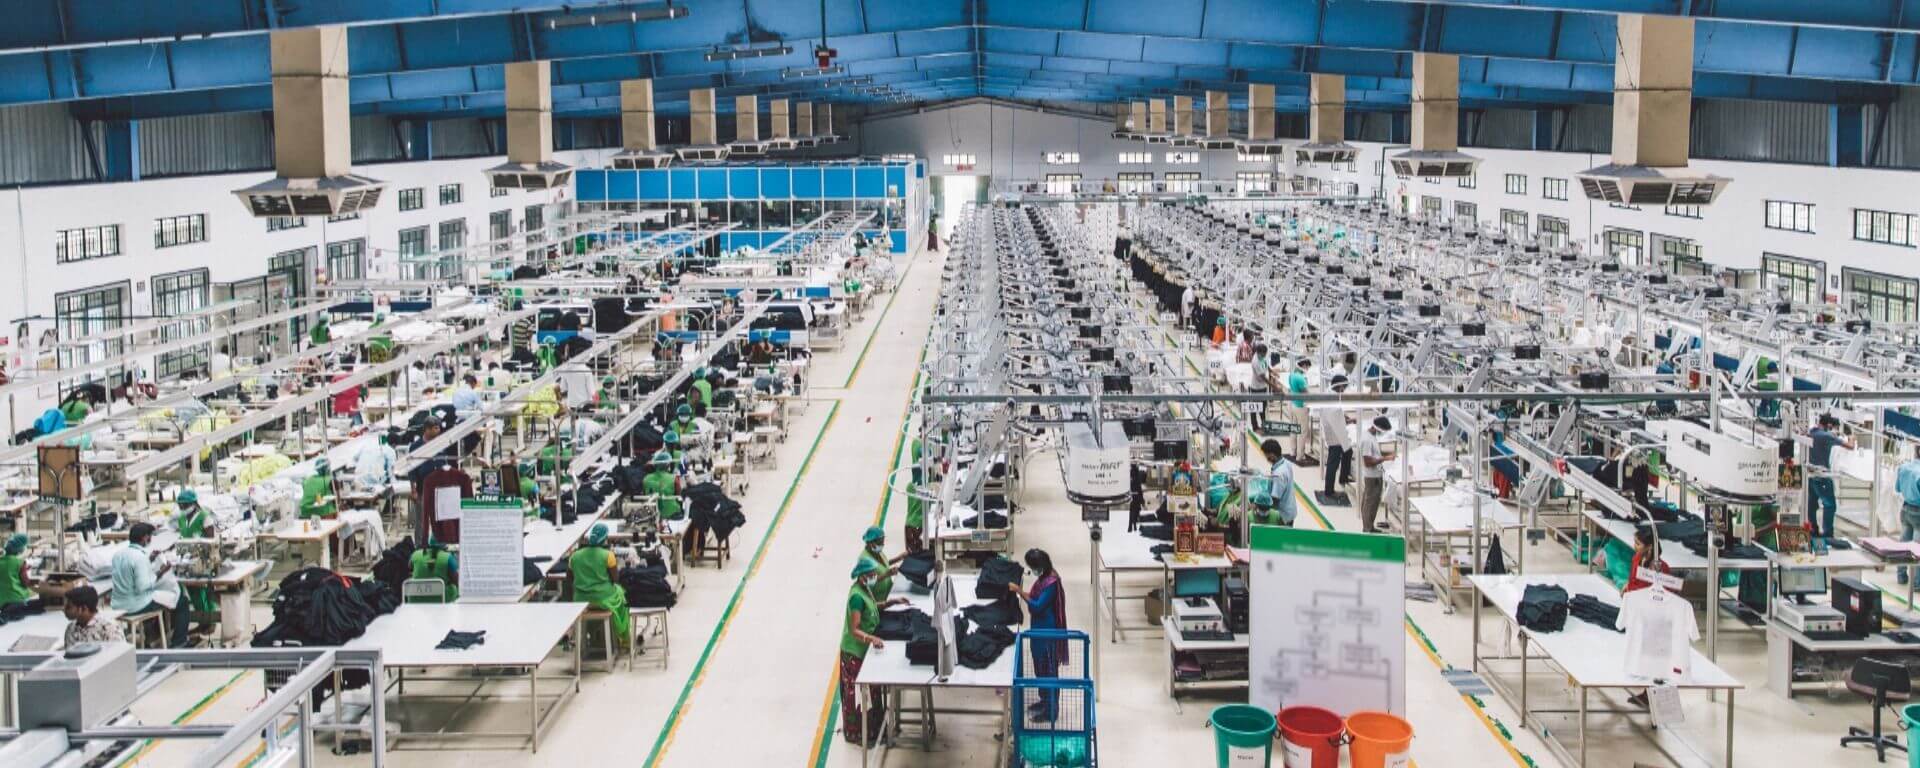 โรงงานผลิตเสื้อผ้า